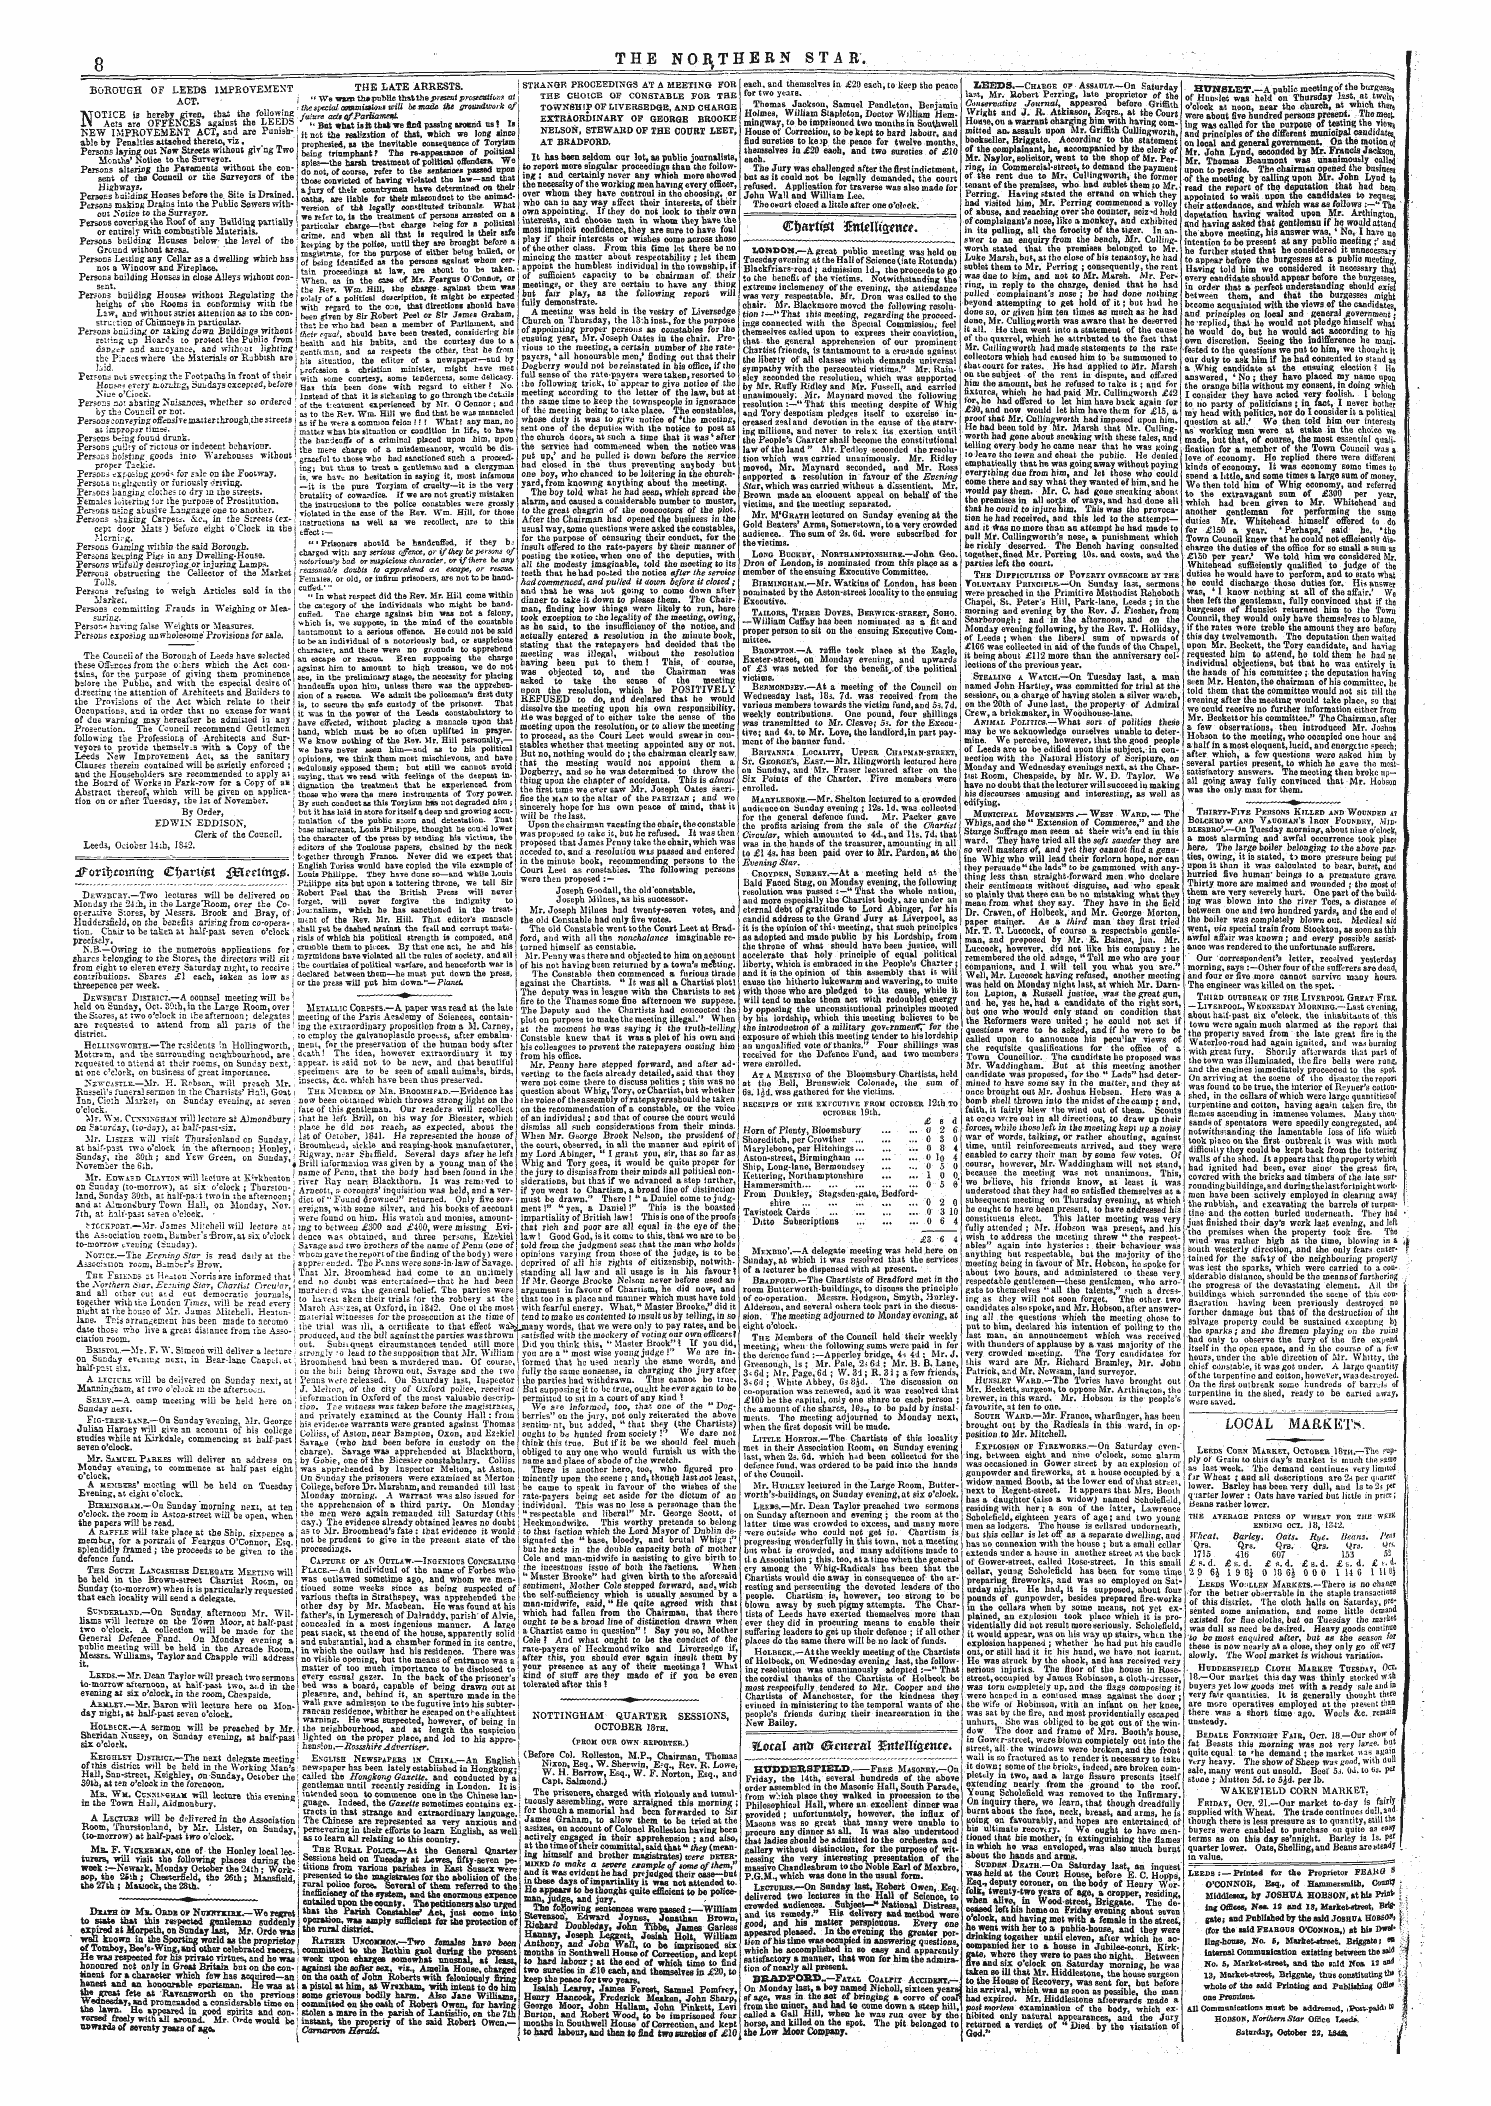 Northern Star (1837-1852): jS F Y, 3rd edition - Dfovittccminci Ci)Artt£T Ffieeun%&.